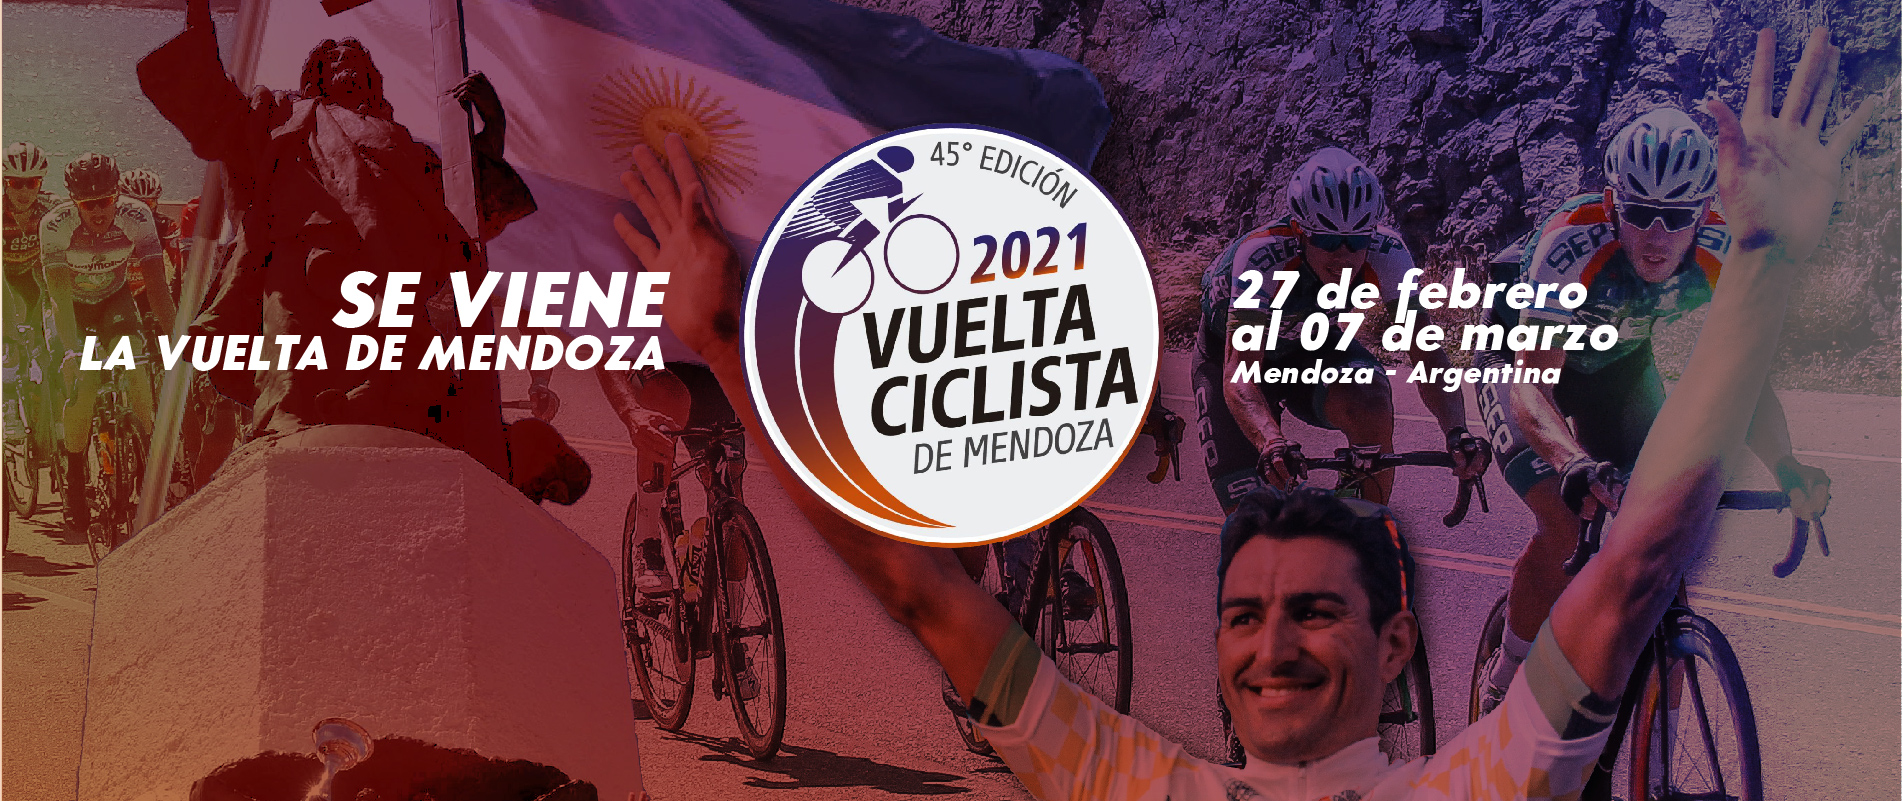 Vuelta Ciclista de Mendoza